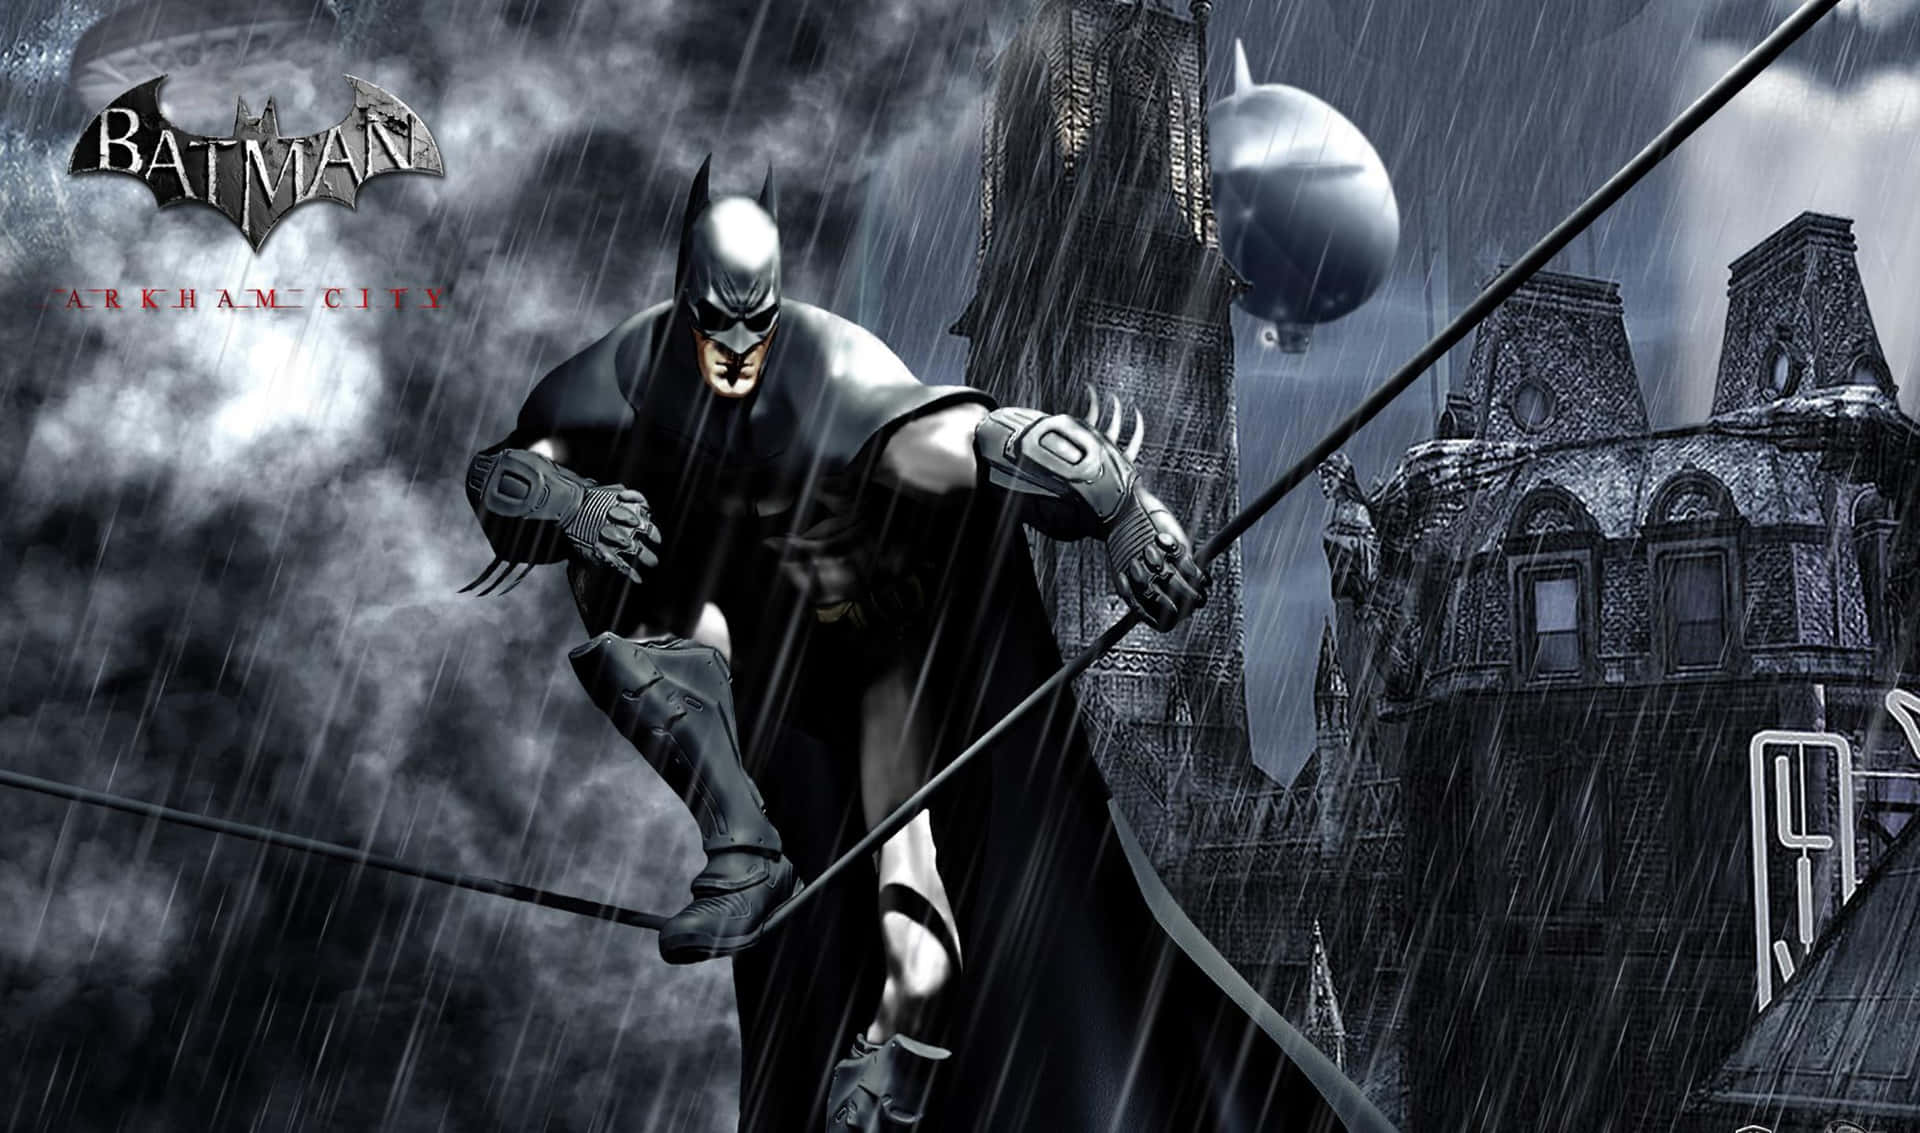 Batmanmöter Sina Rädslor I Spelet Arkham City.